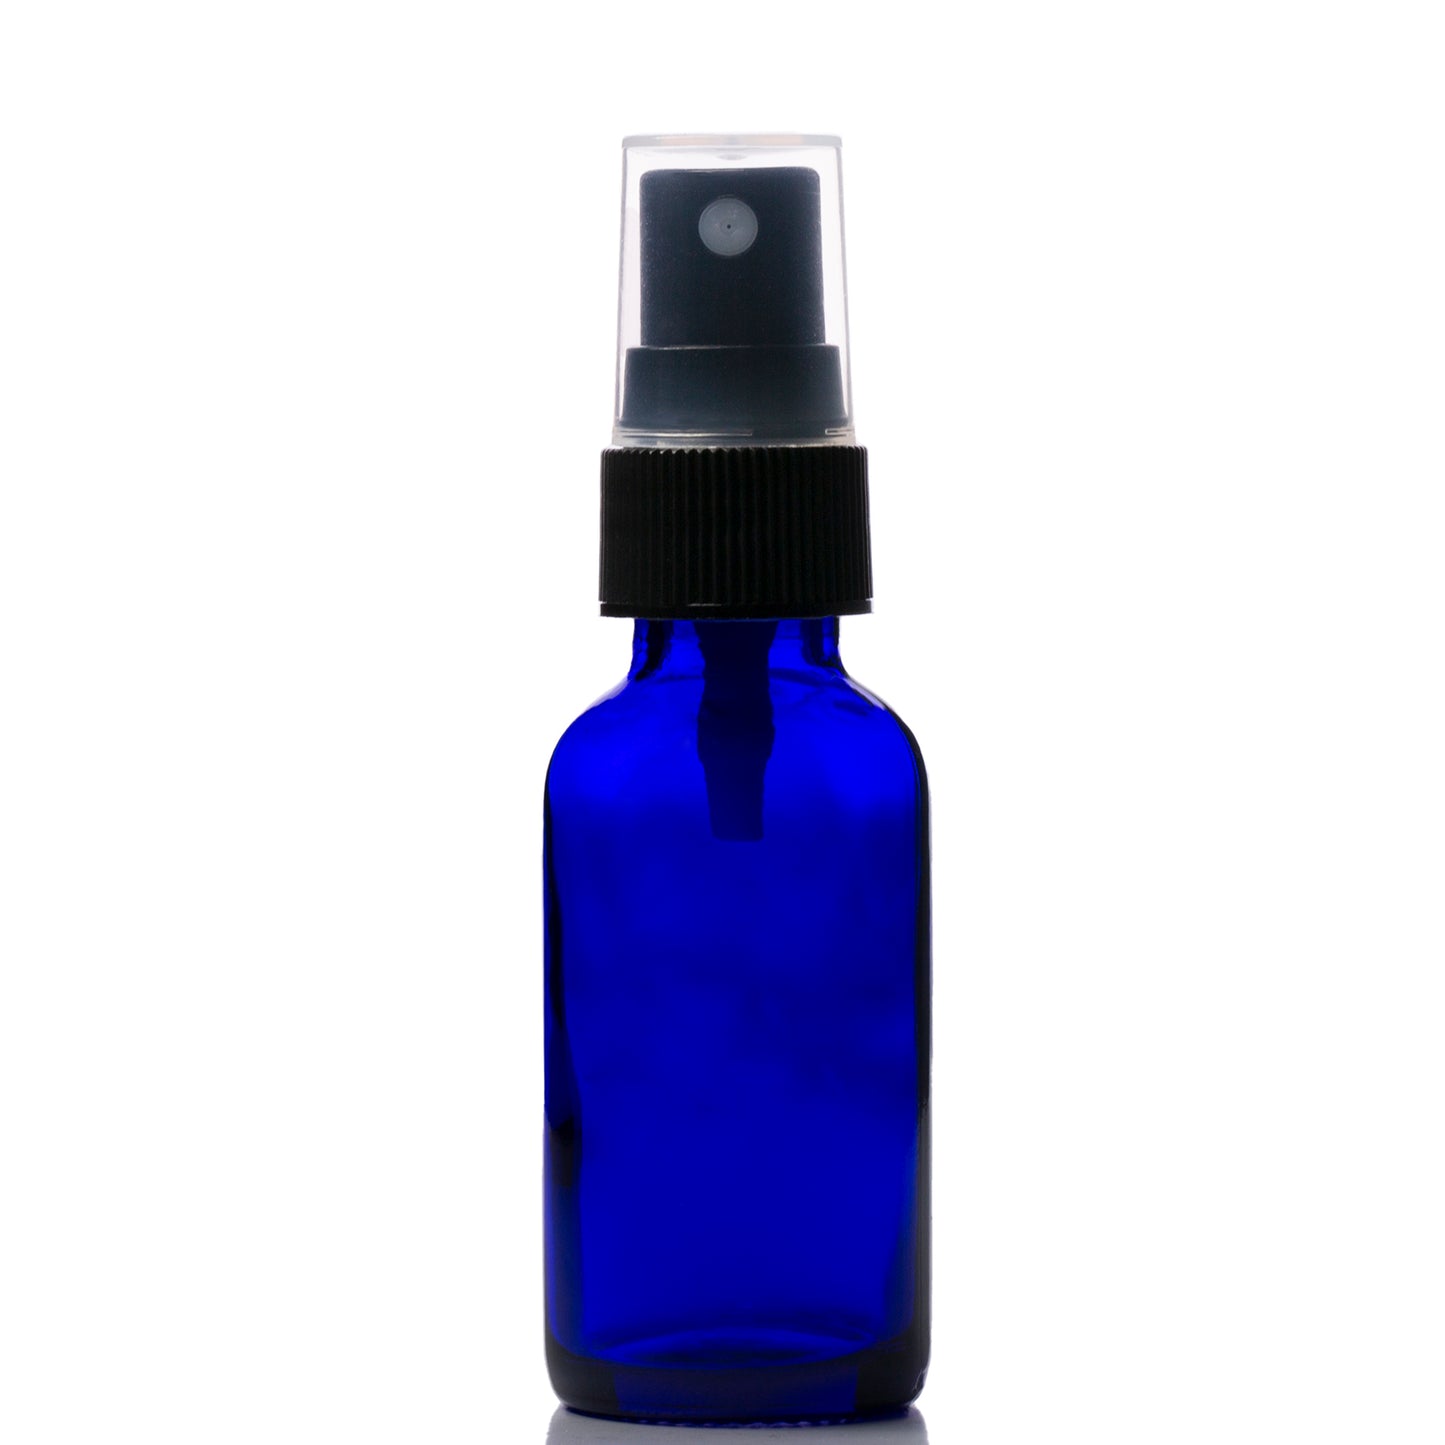 1 oz Blue Glass Boston Round Bottle with 20-400 Black Fine Mist Sprayer